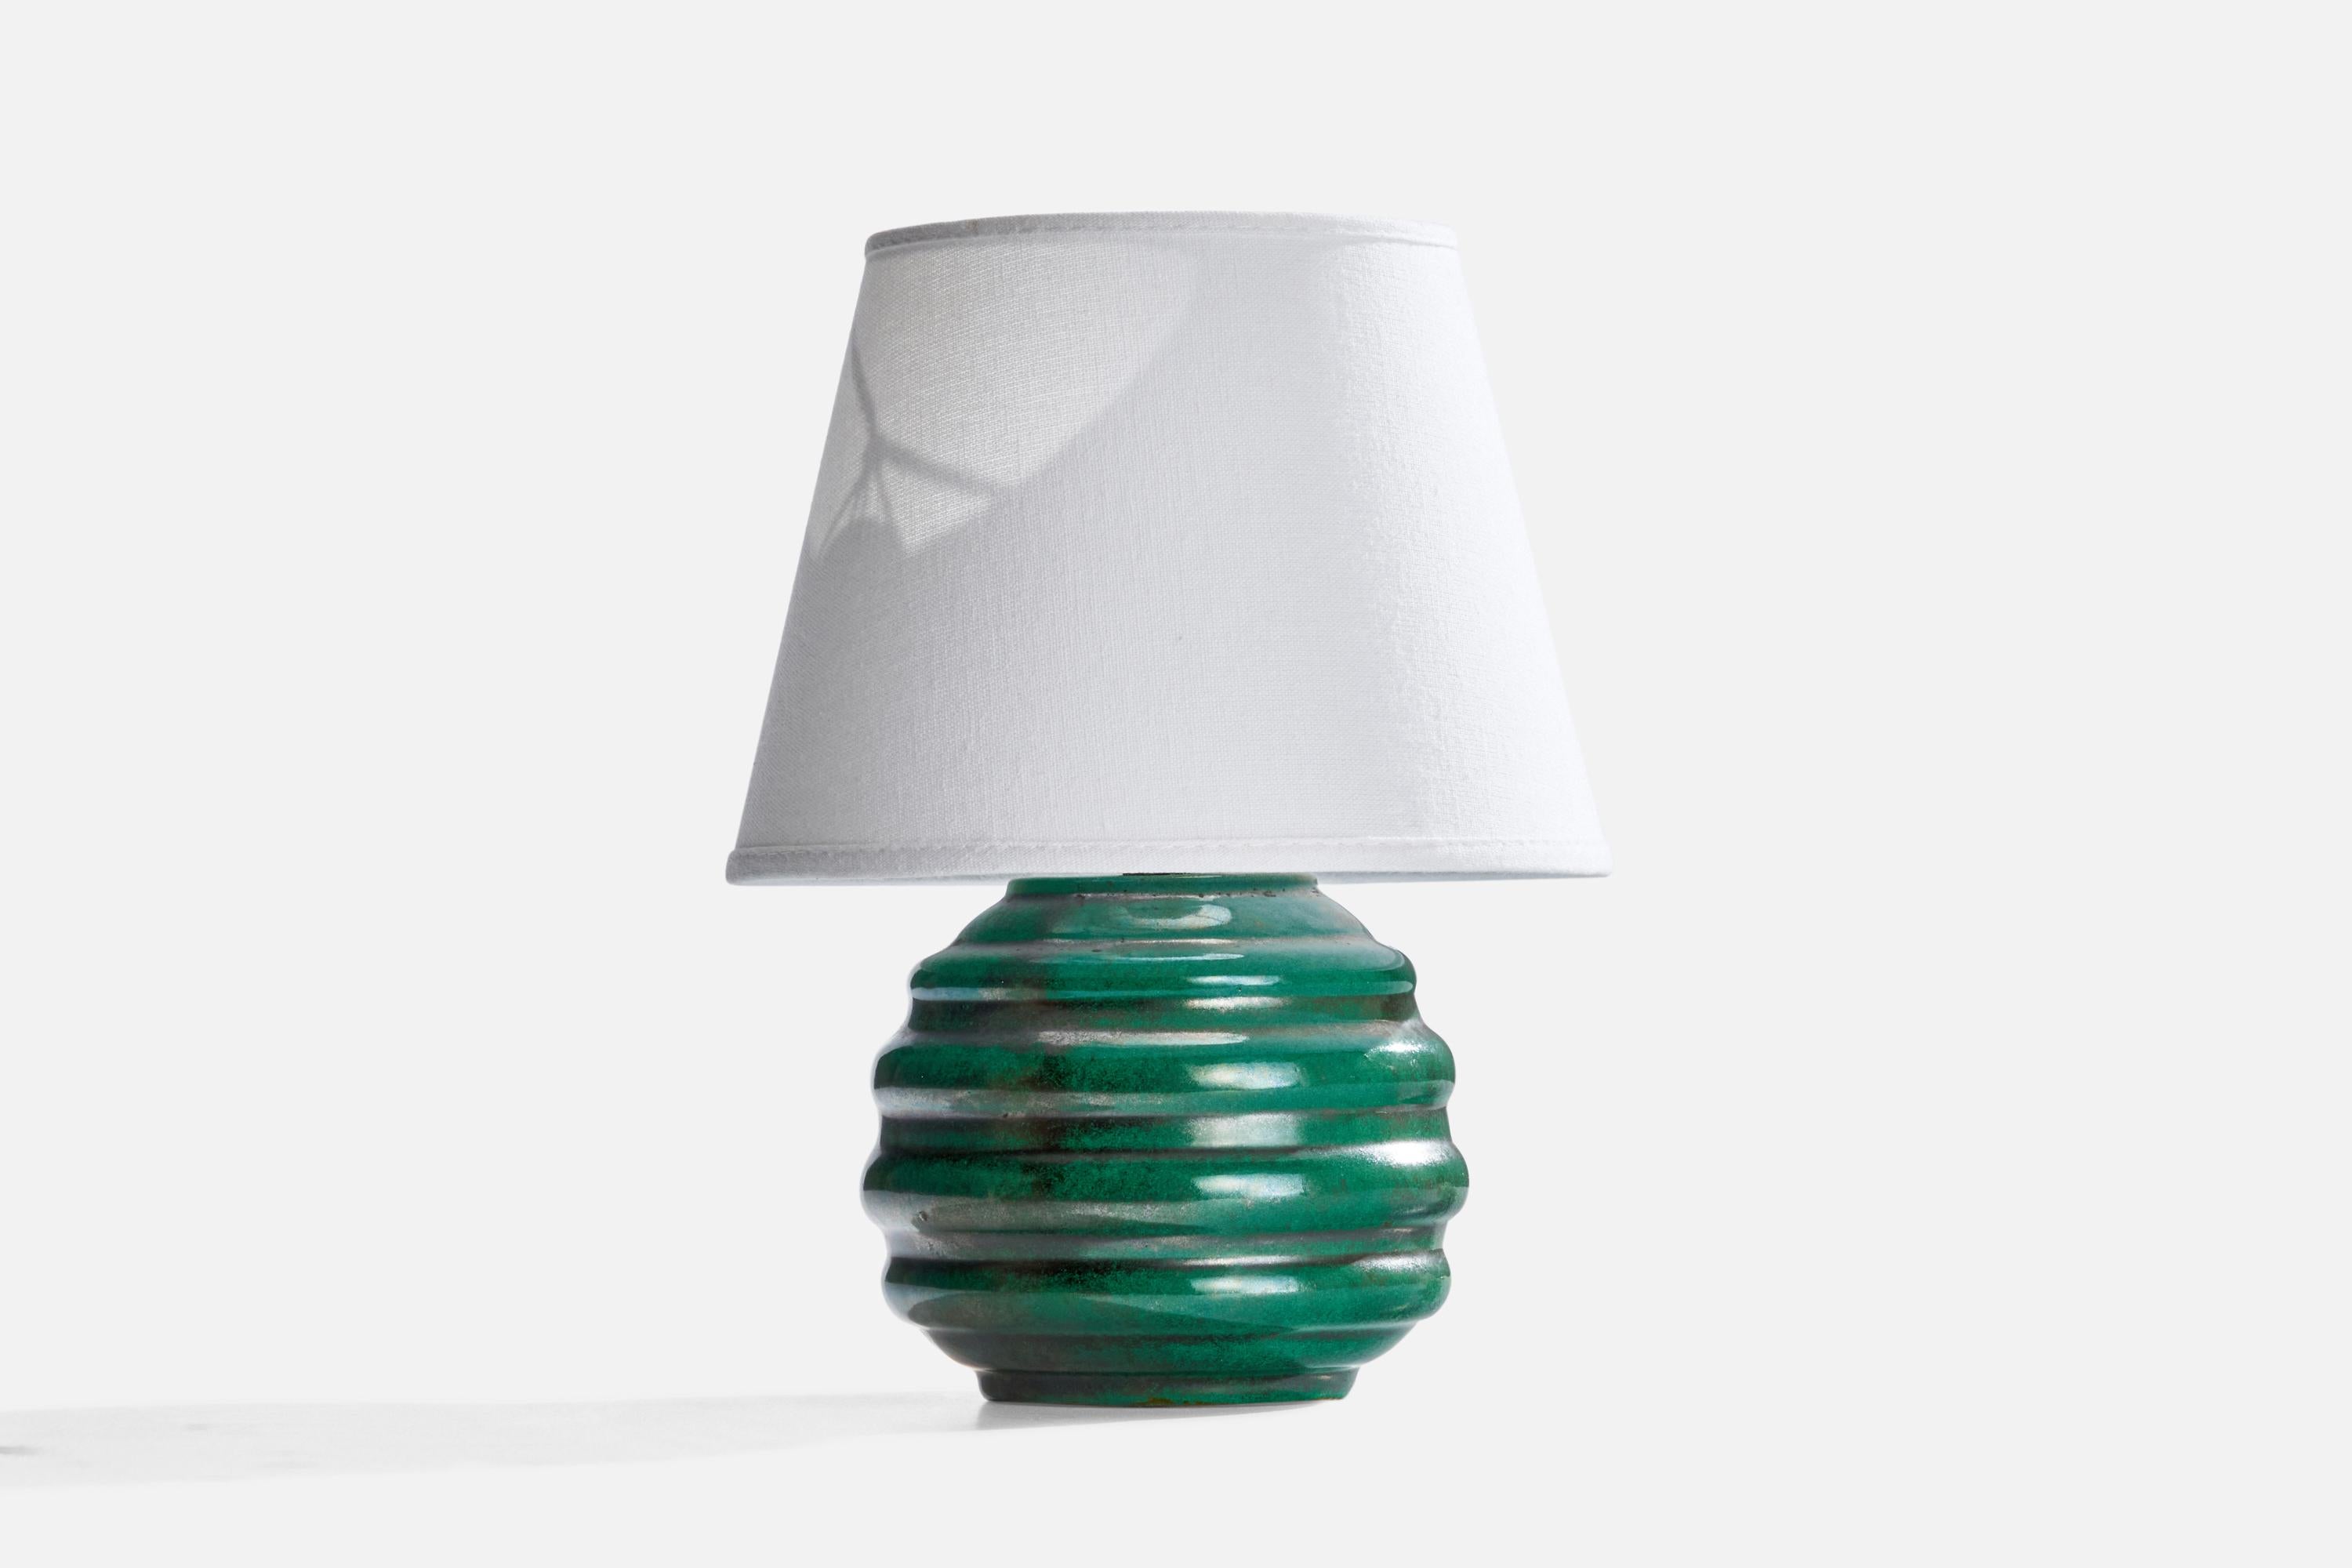 Lampe de table en céramique émaillée verte, conçue et produite en Suède, c. 1930.

Dimensions de la lampe (pouces) : 7